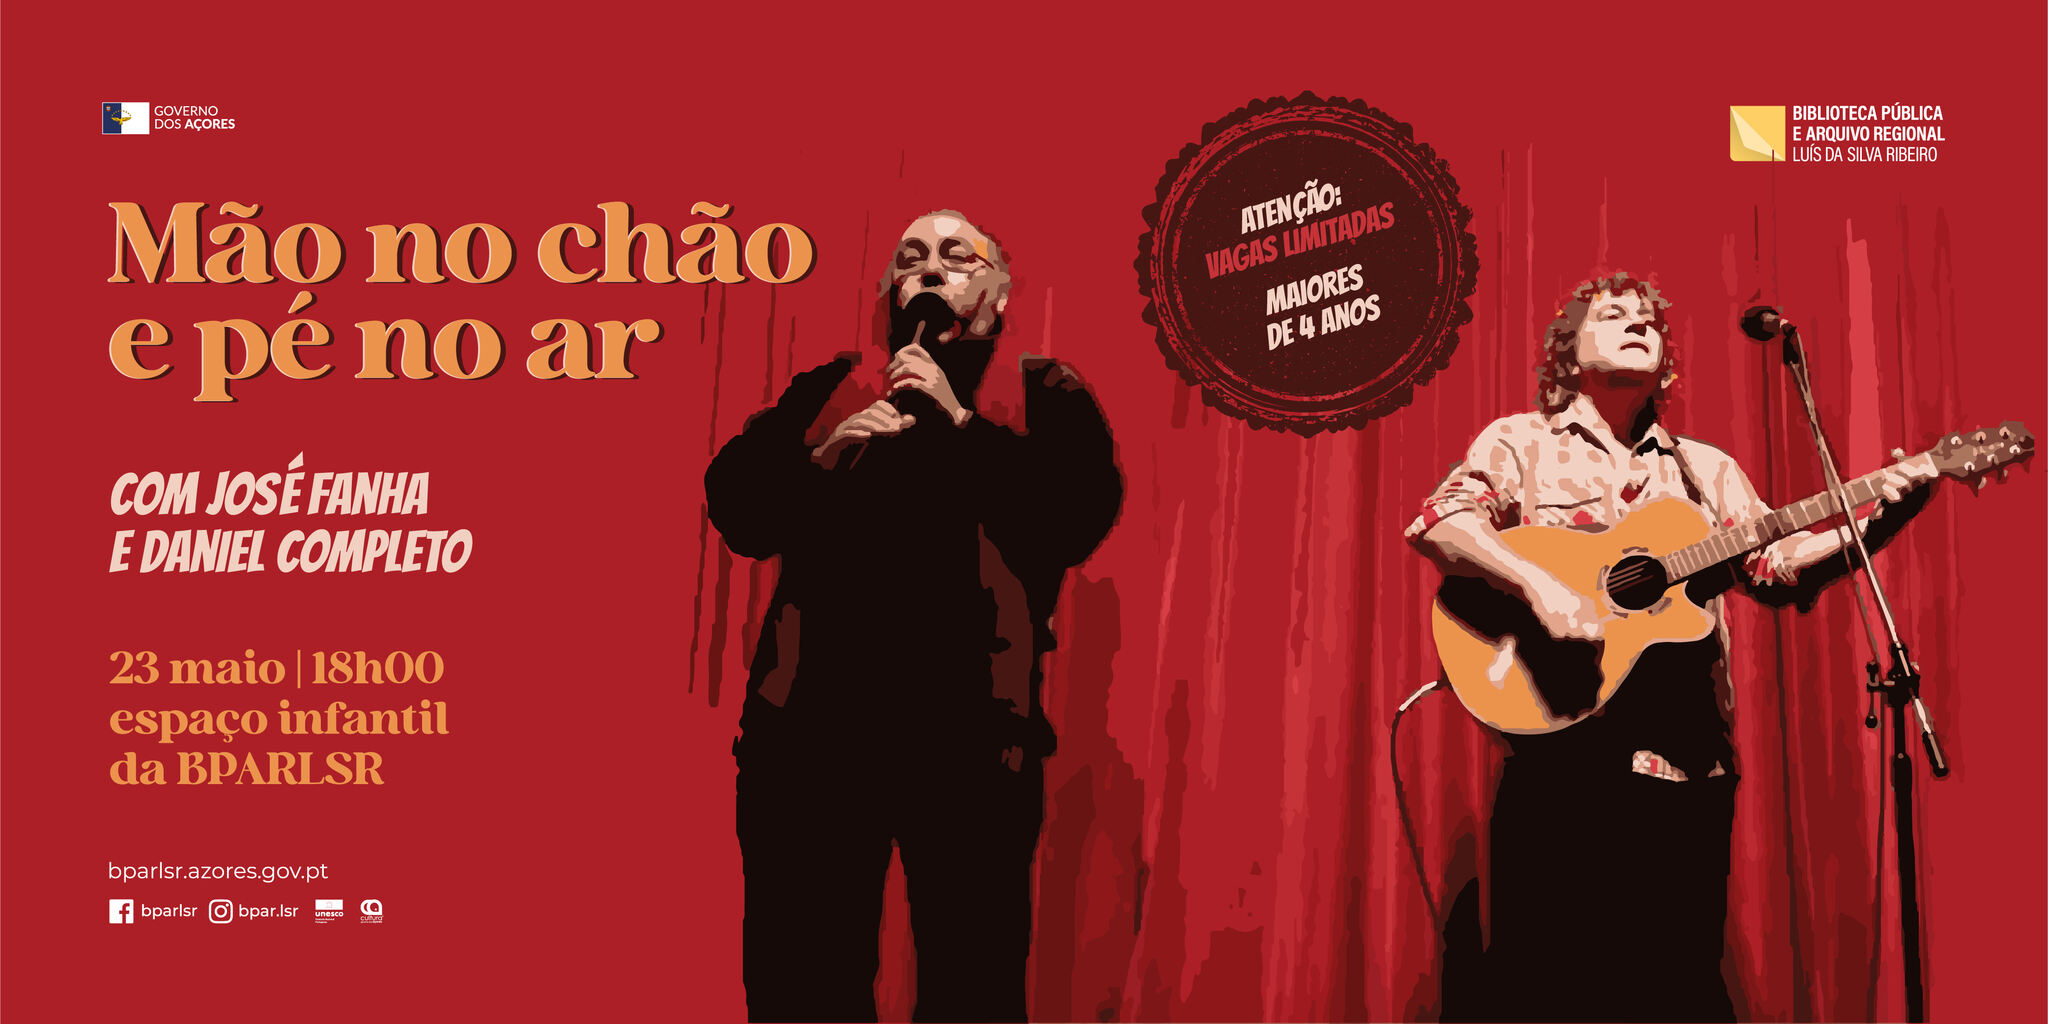 ESPETÁCULO MUSICAL | MÃO NO CHÃO E PÉ NO AR